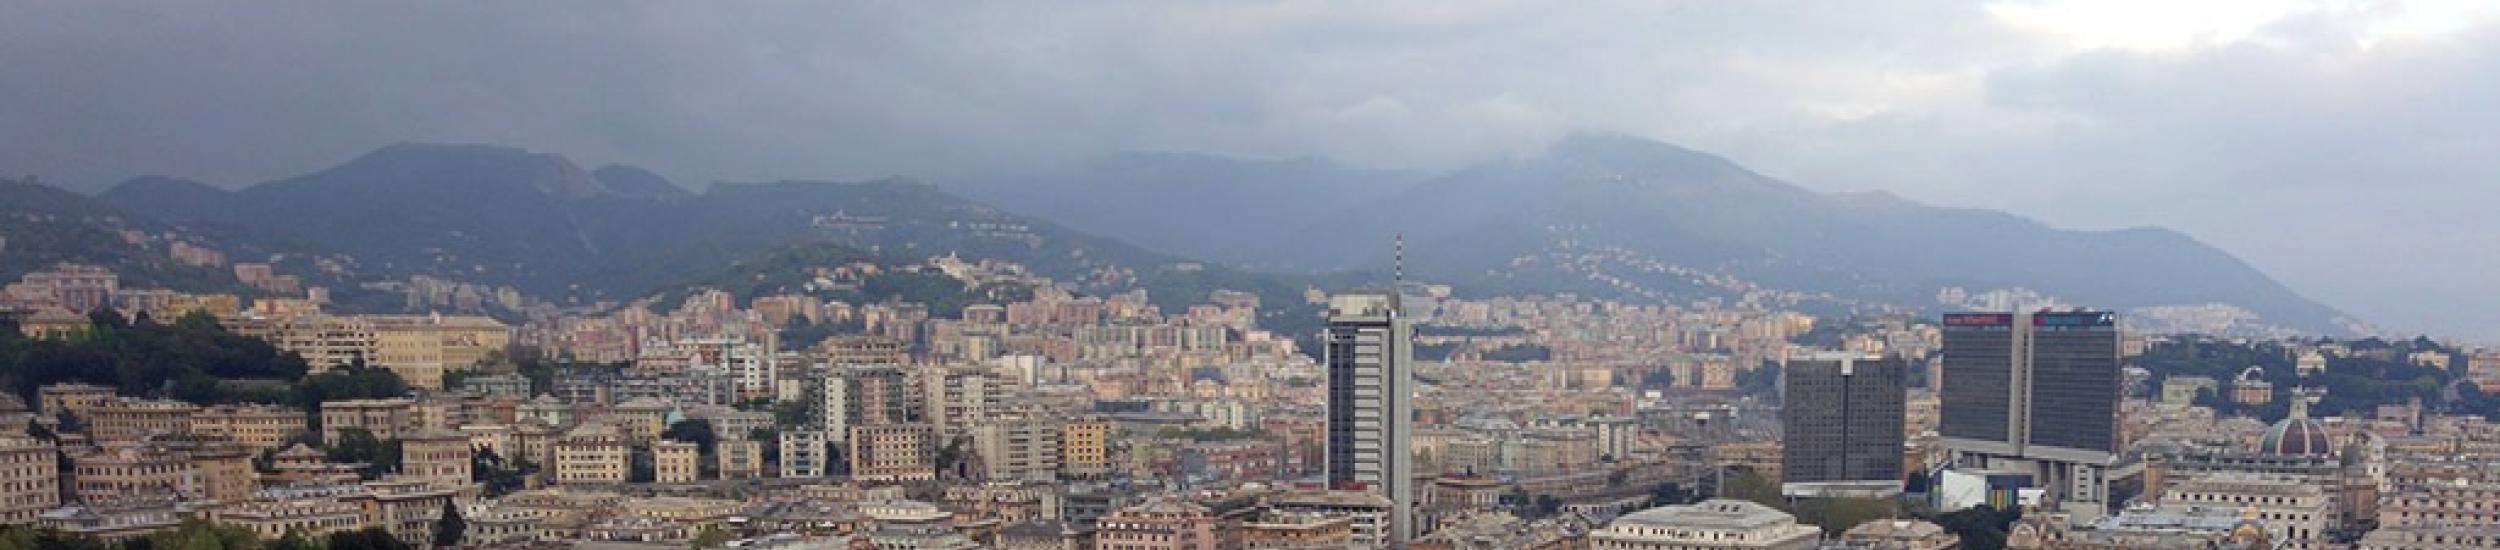 Aria, ieri inquinamento nei limiti nella città metropolitana di genova (news del 2015-12-30 10:13:38)